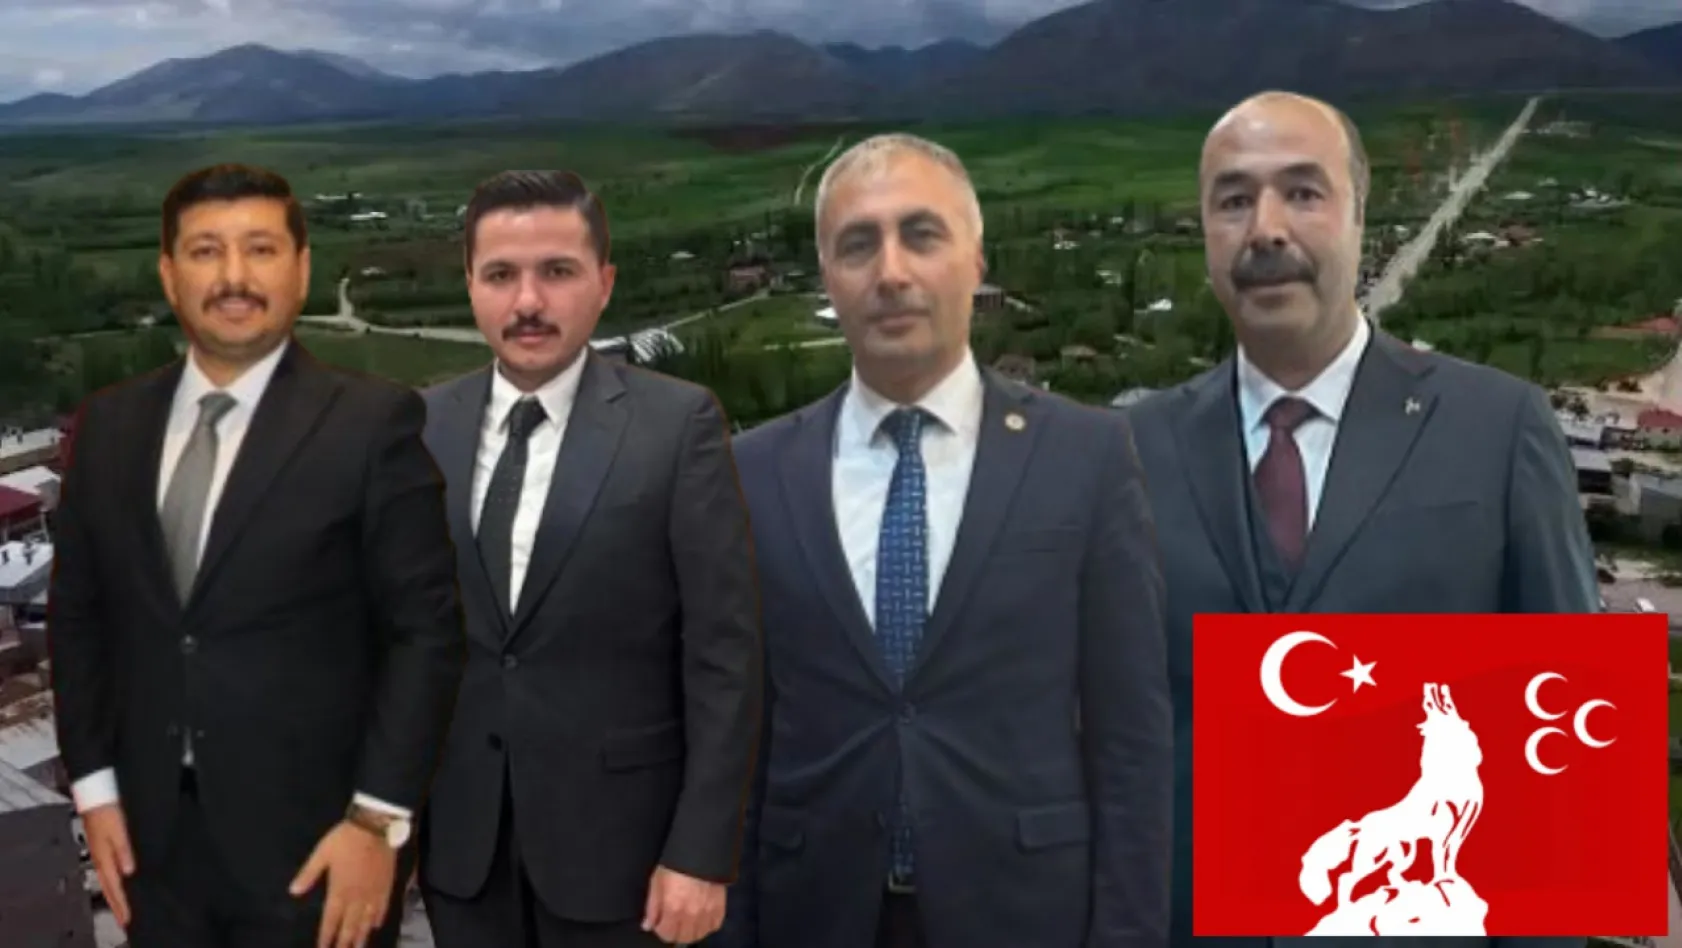 Sarız'da MHP'nin aday adayı 4 oldu